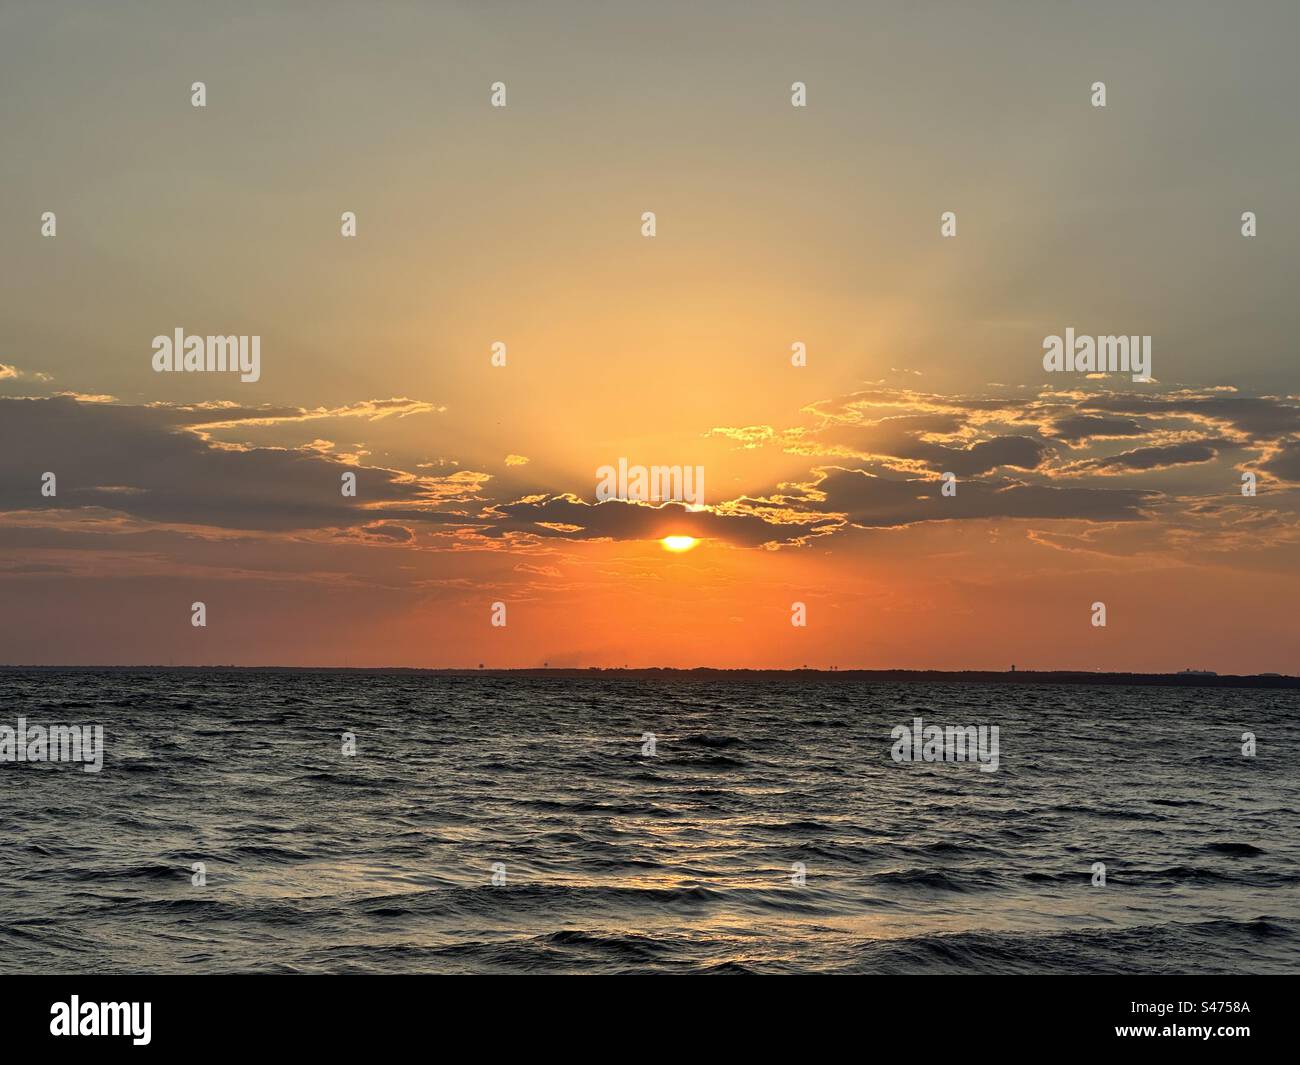 Himmlischer Sonnenuntergang mit einer erstaunlichen Auswahl an goldenen und bernsteinfarbenen Farben. Goldene Stunden Stockfoto